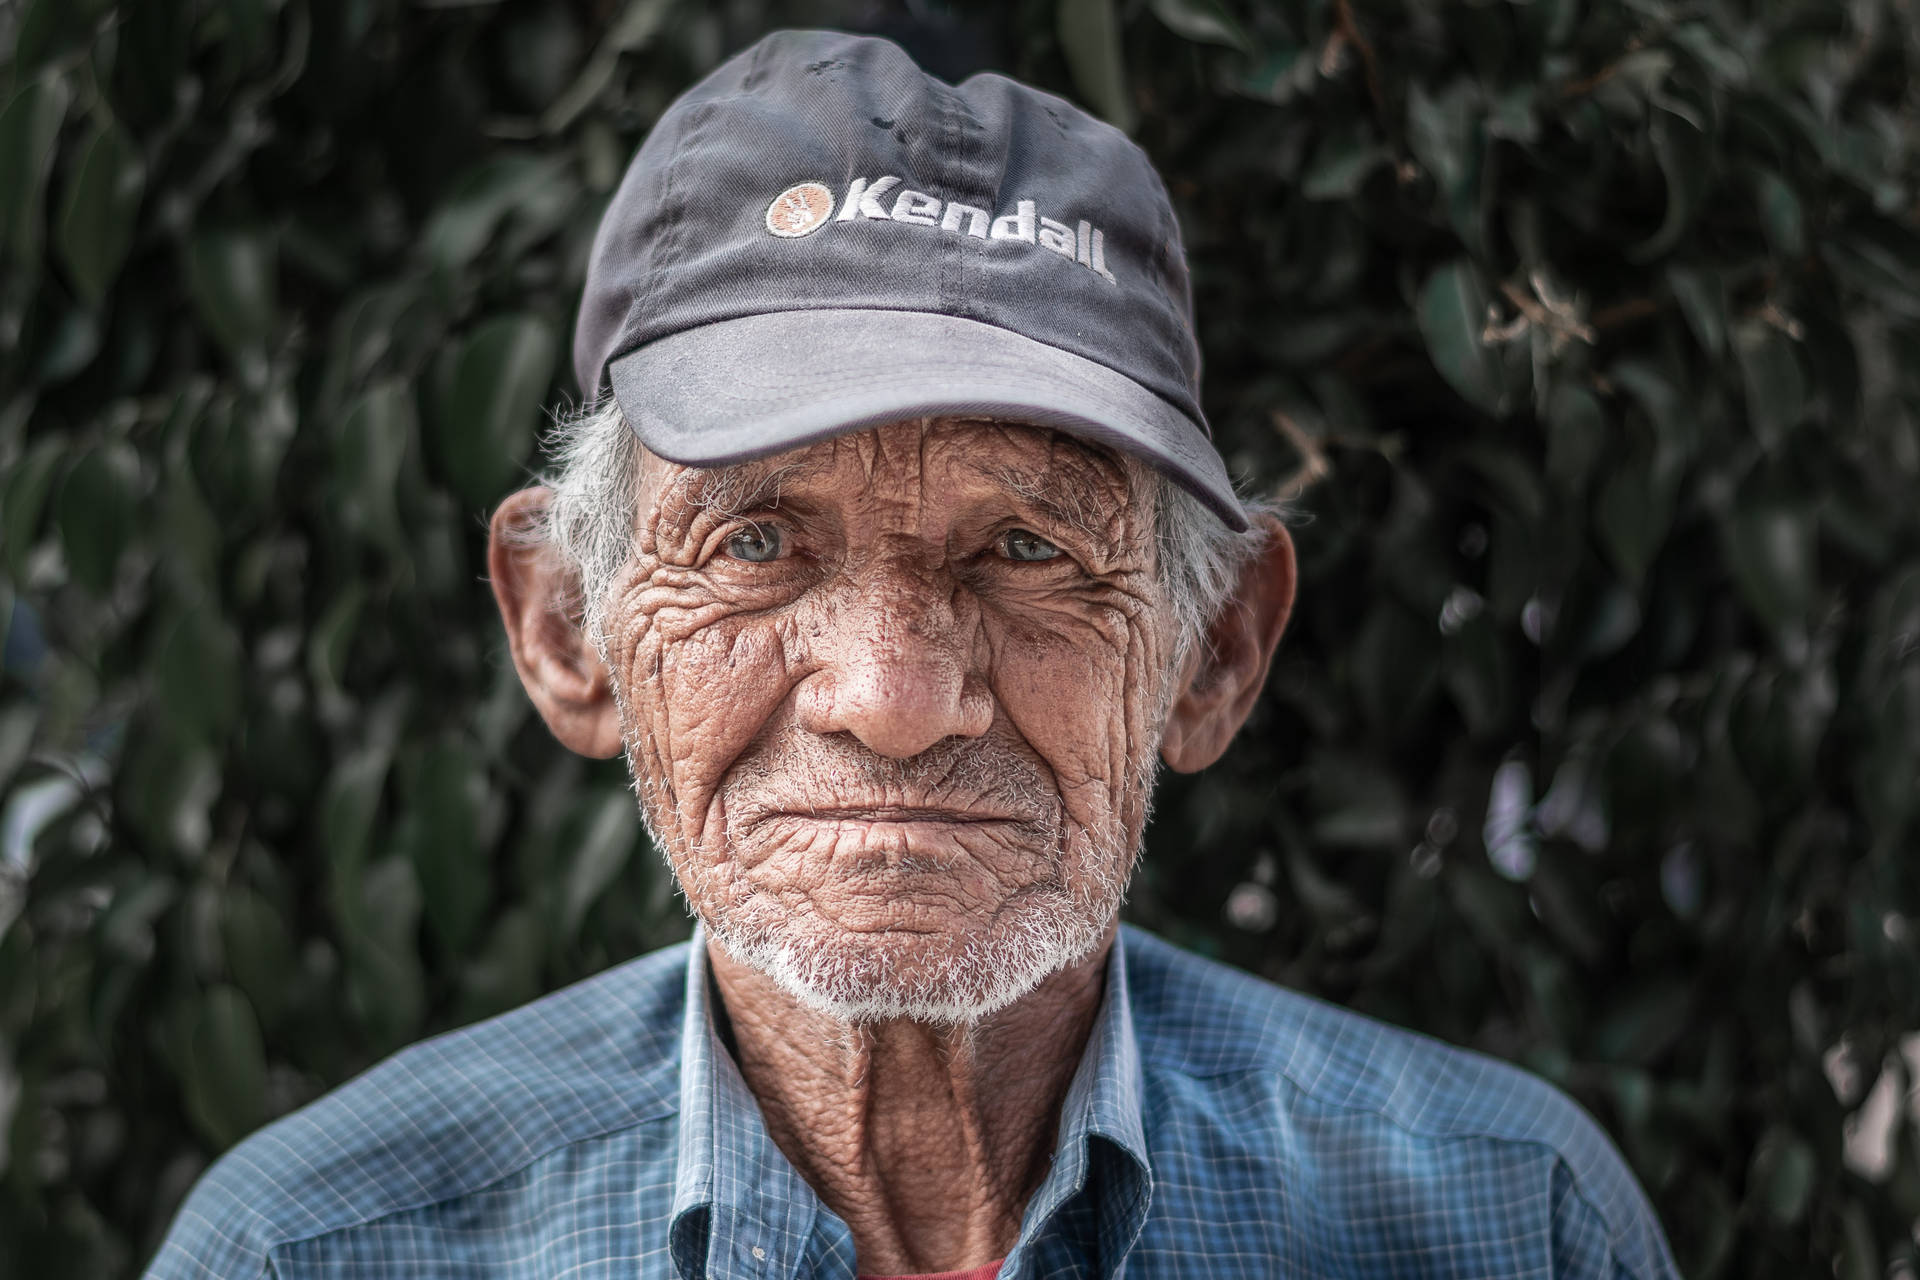 Wise Gaze - An Elderly Man in a Baseball Cap Wallpaper